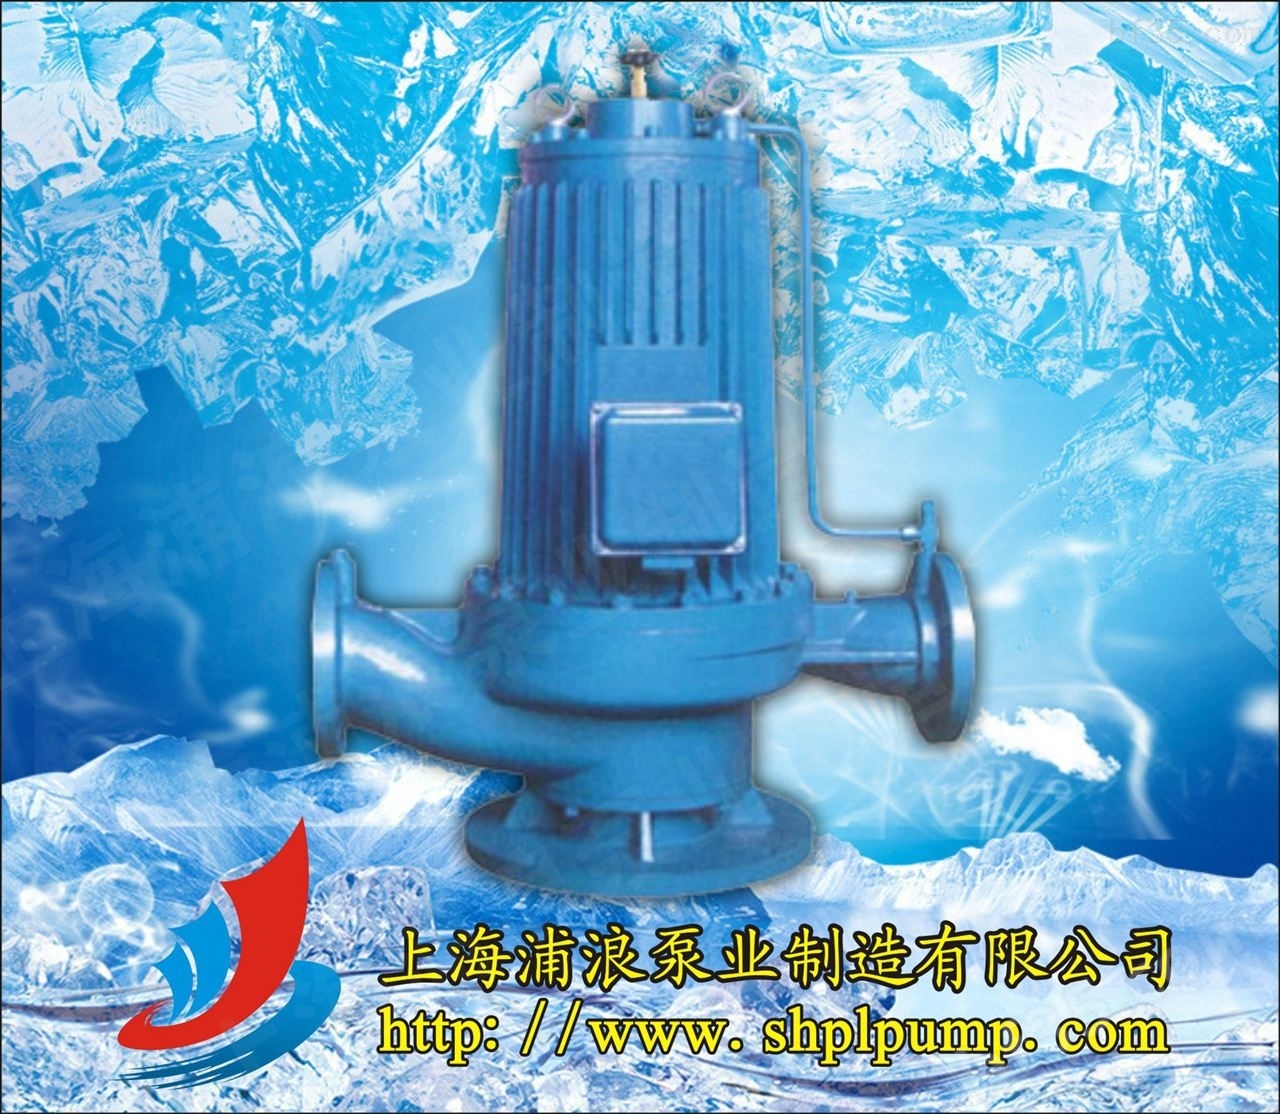 离心泵,SPG屏蔽泵,屏蔽泵价格,屏蔽泵参数,屏蔽泵原理